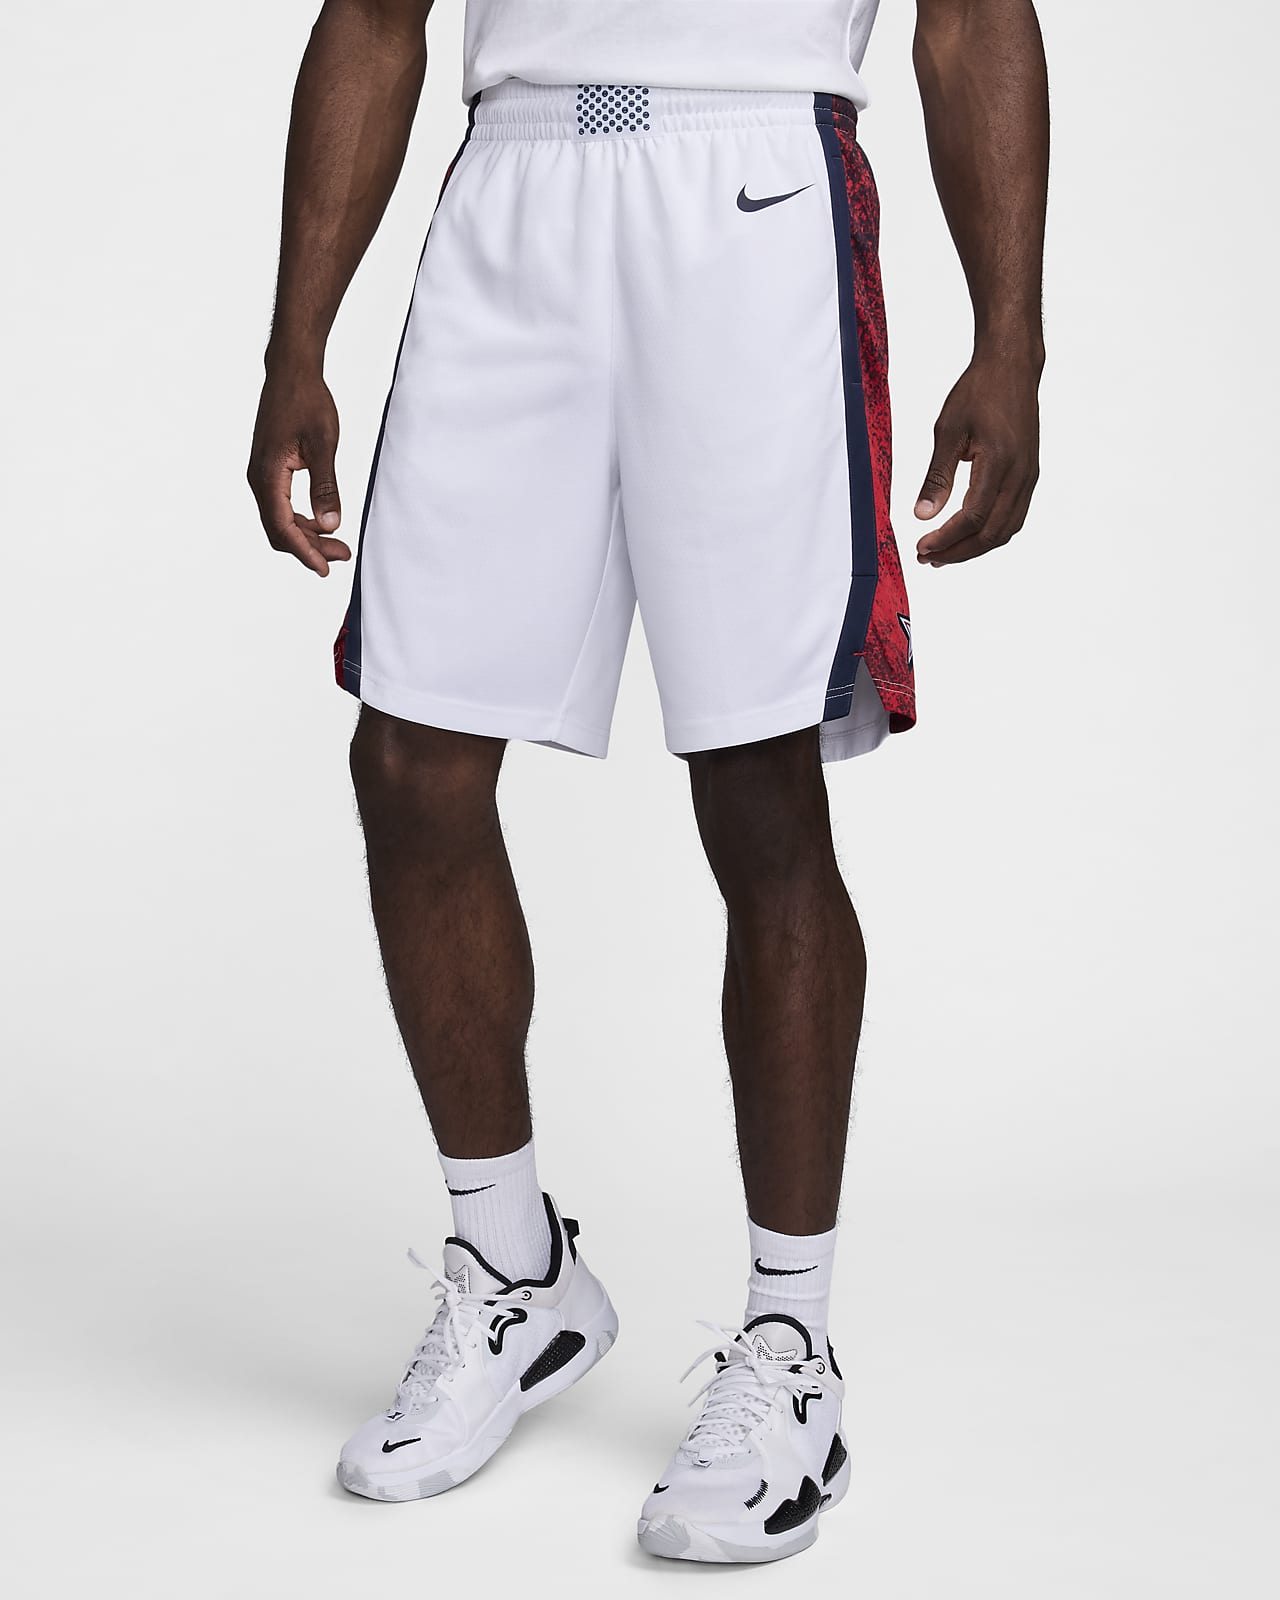 USA Limited 主場男款 Nike 籃球短褲